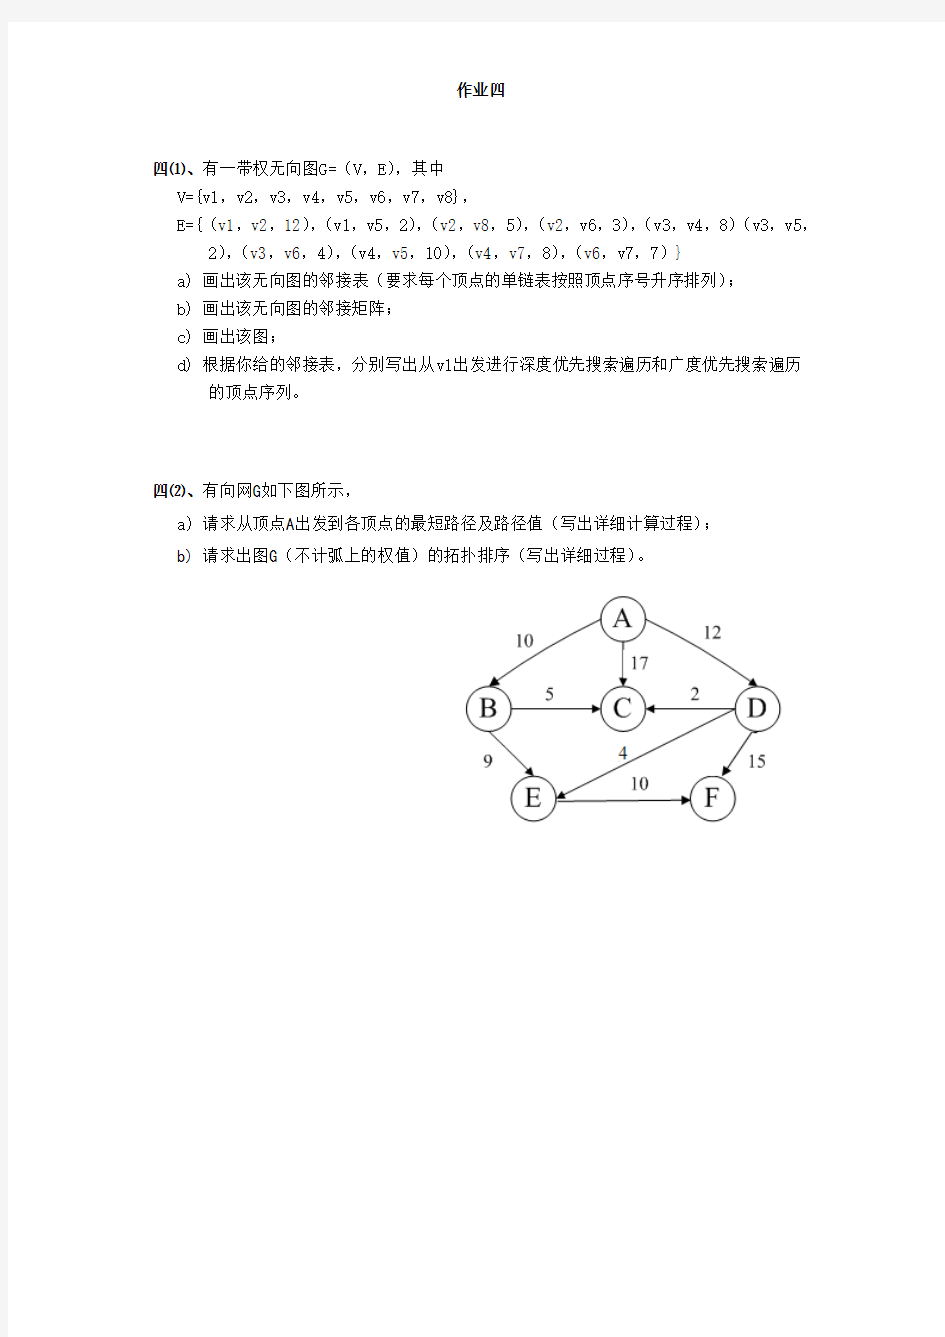 作业4-数据结构-图